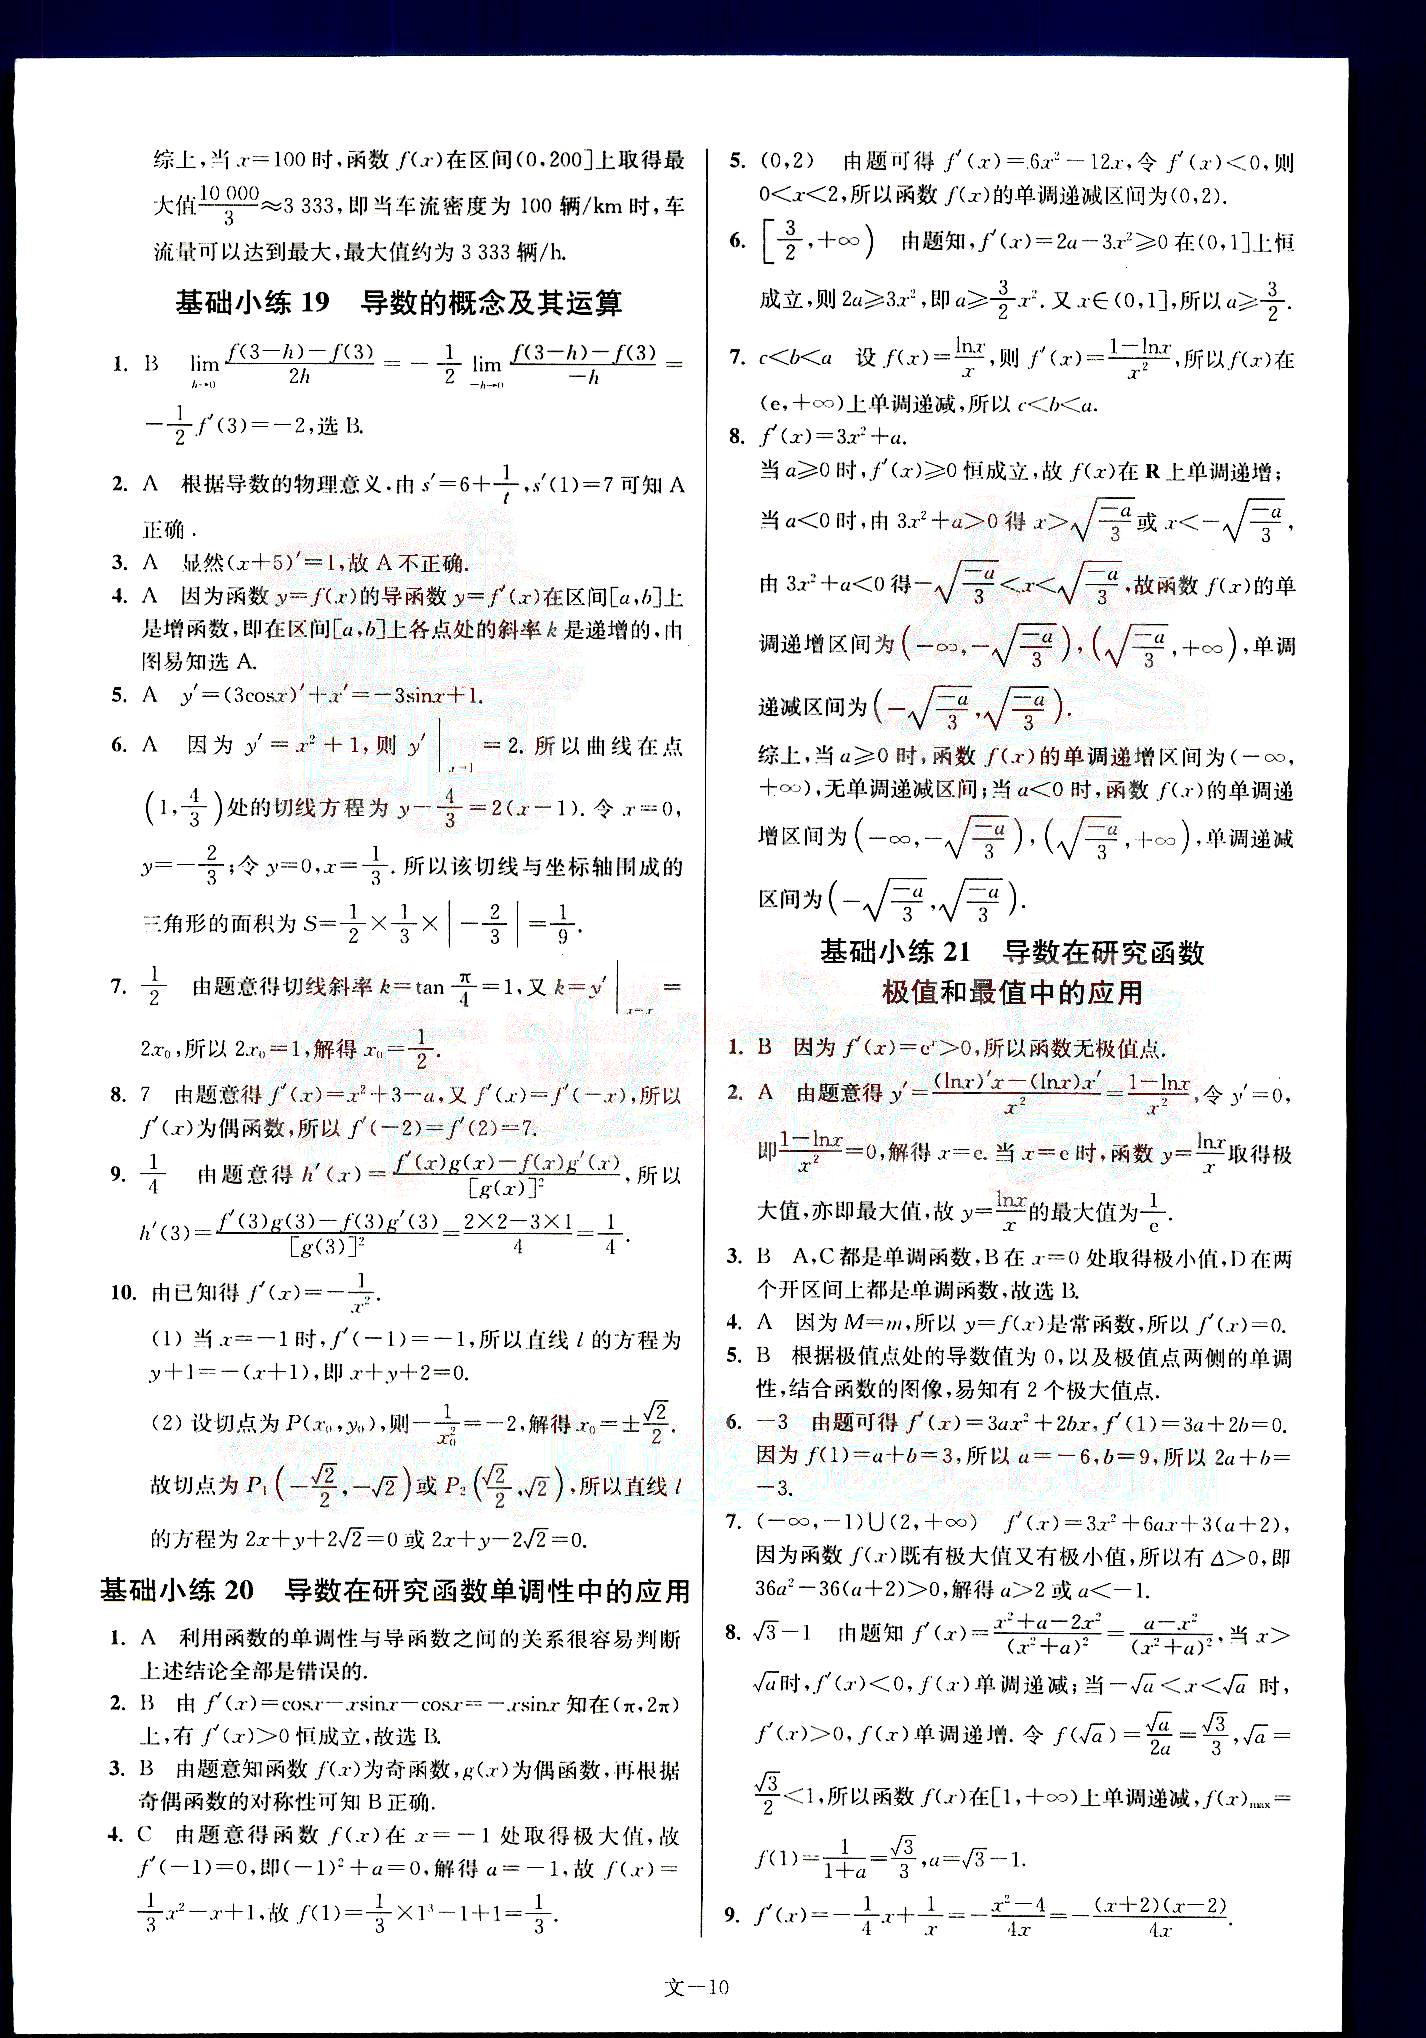 小题狂做-高考数学-文科-最基础篇南京大学出版社 第2部分 [5]